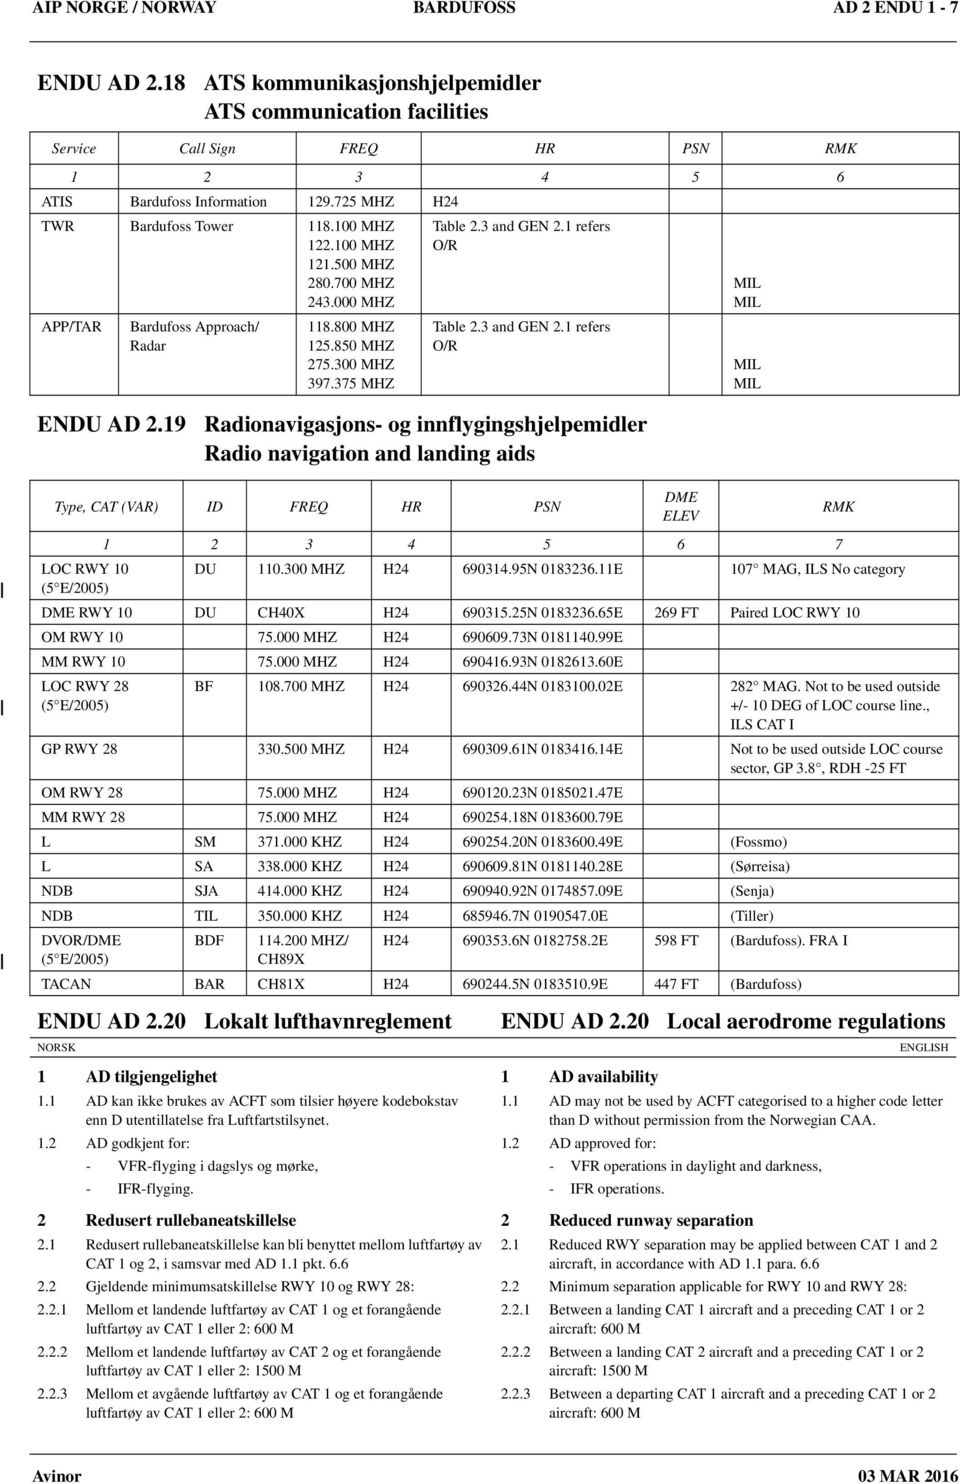 1 refers O/R Table 2.3 and GEN 2.1 refers O/R ENDU AD 2.19 Radionavigasjons og innflygingshjelpemidler ENDU AD 2.